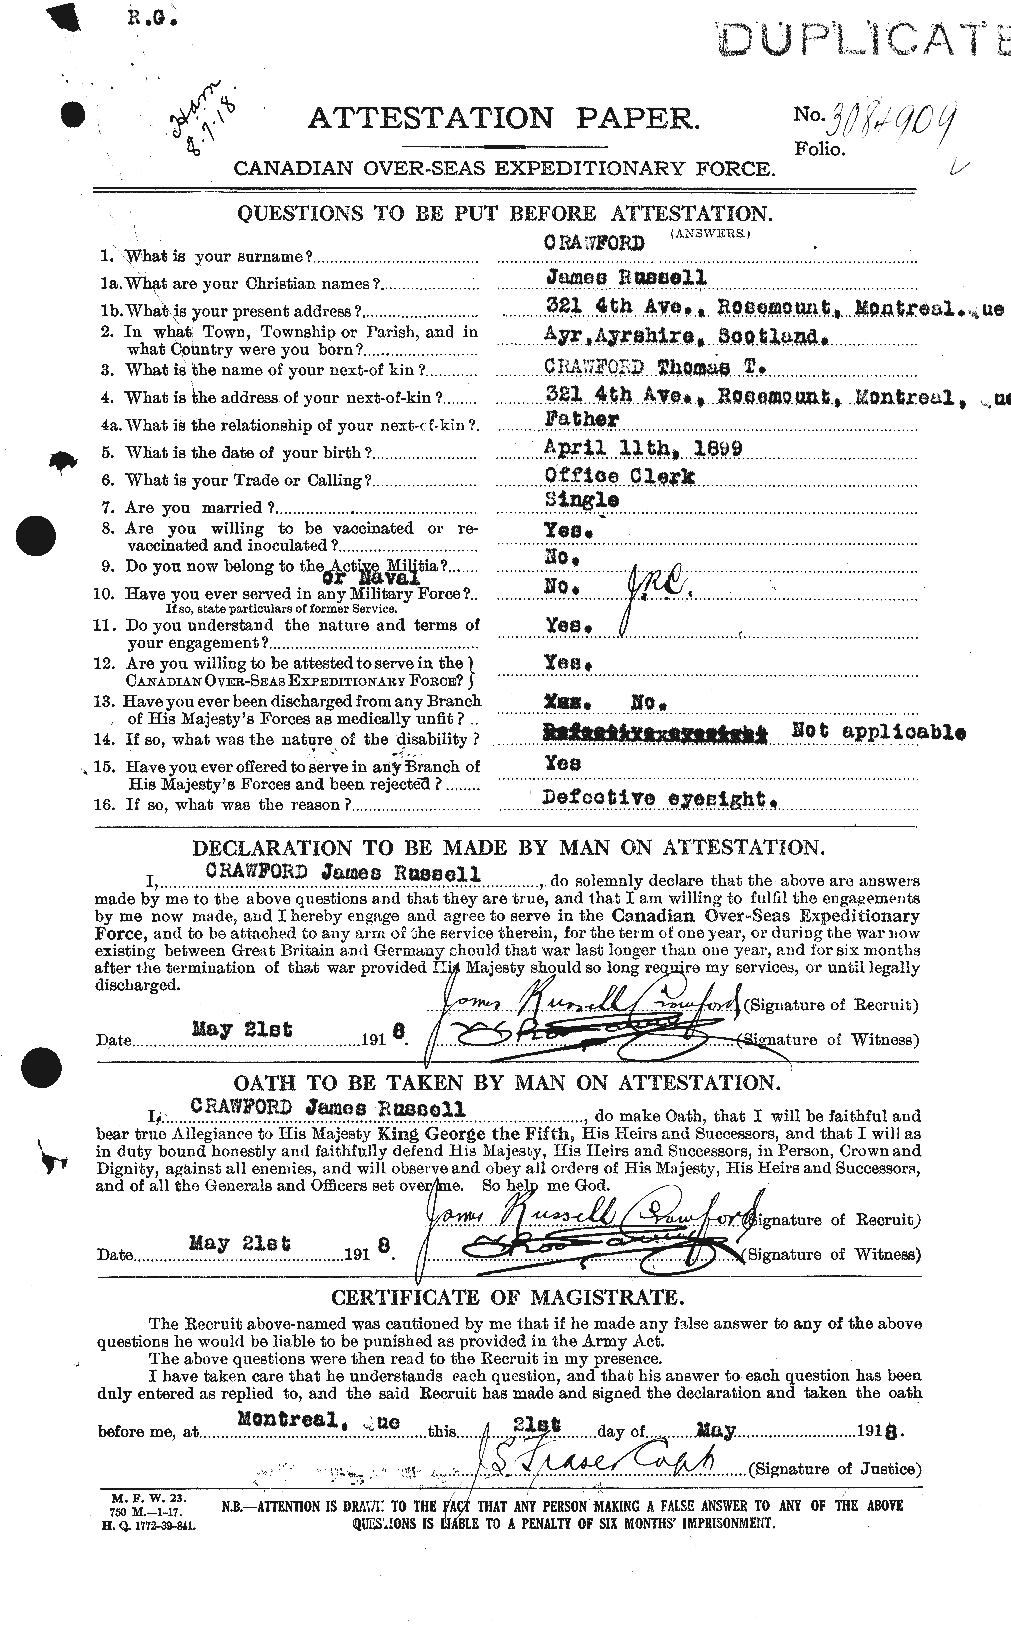 Dossiers du Personnel de la Première Guerre mondiale - CEC 062470a